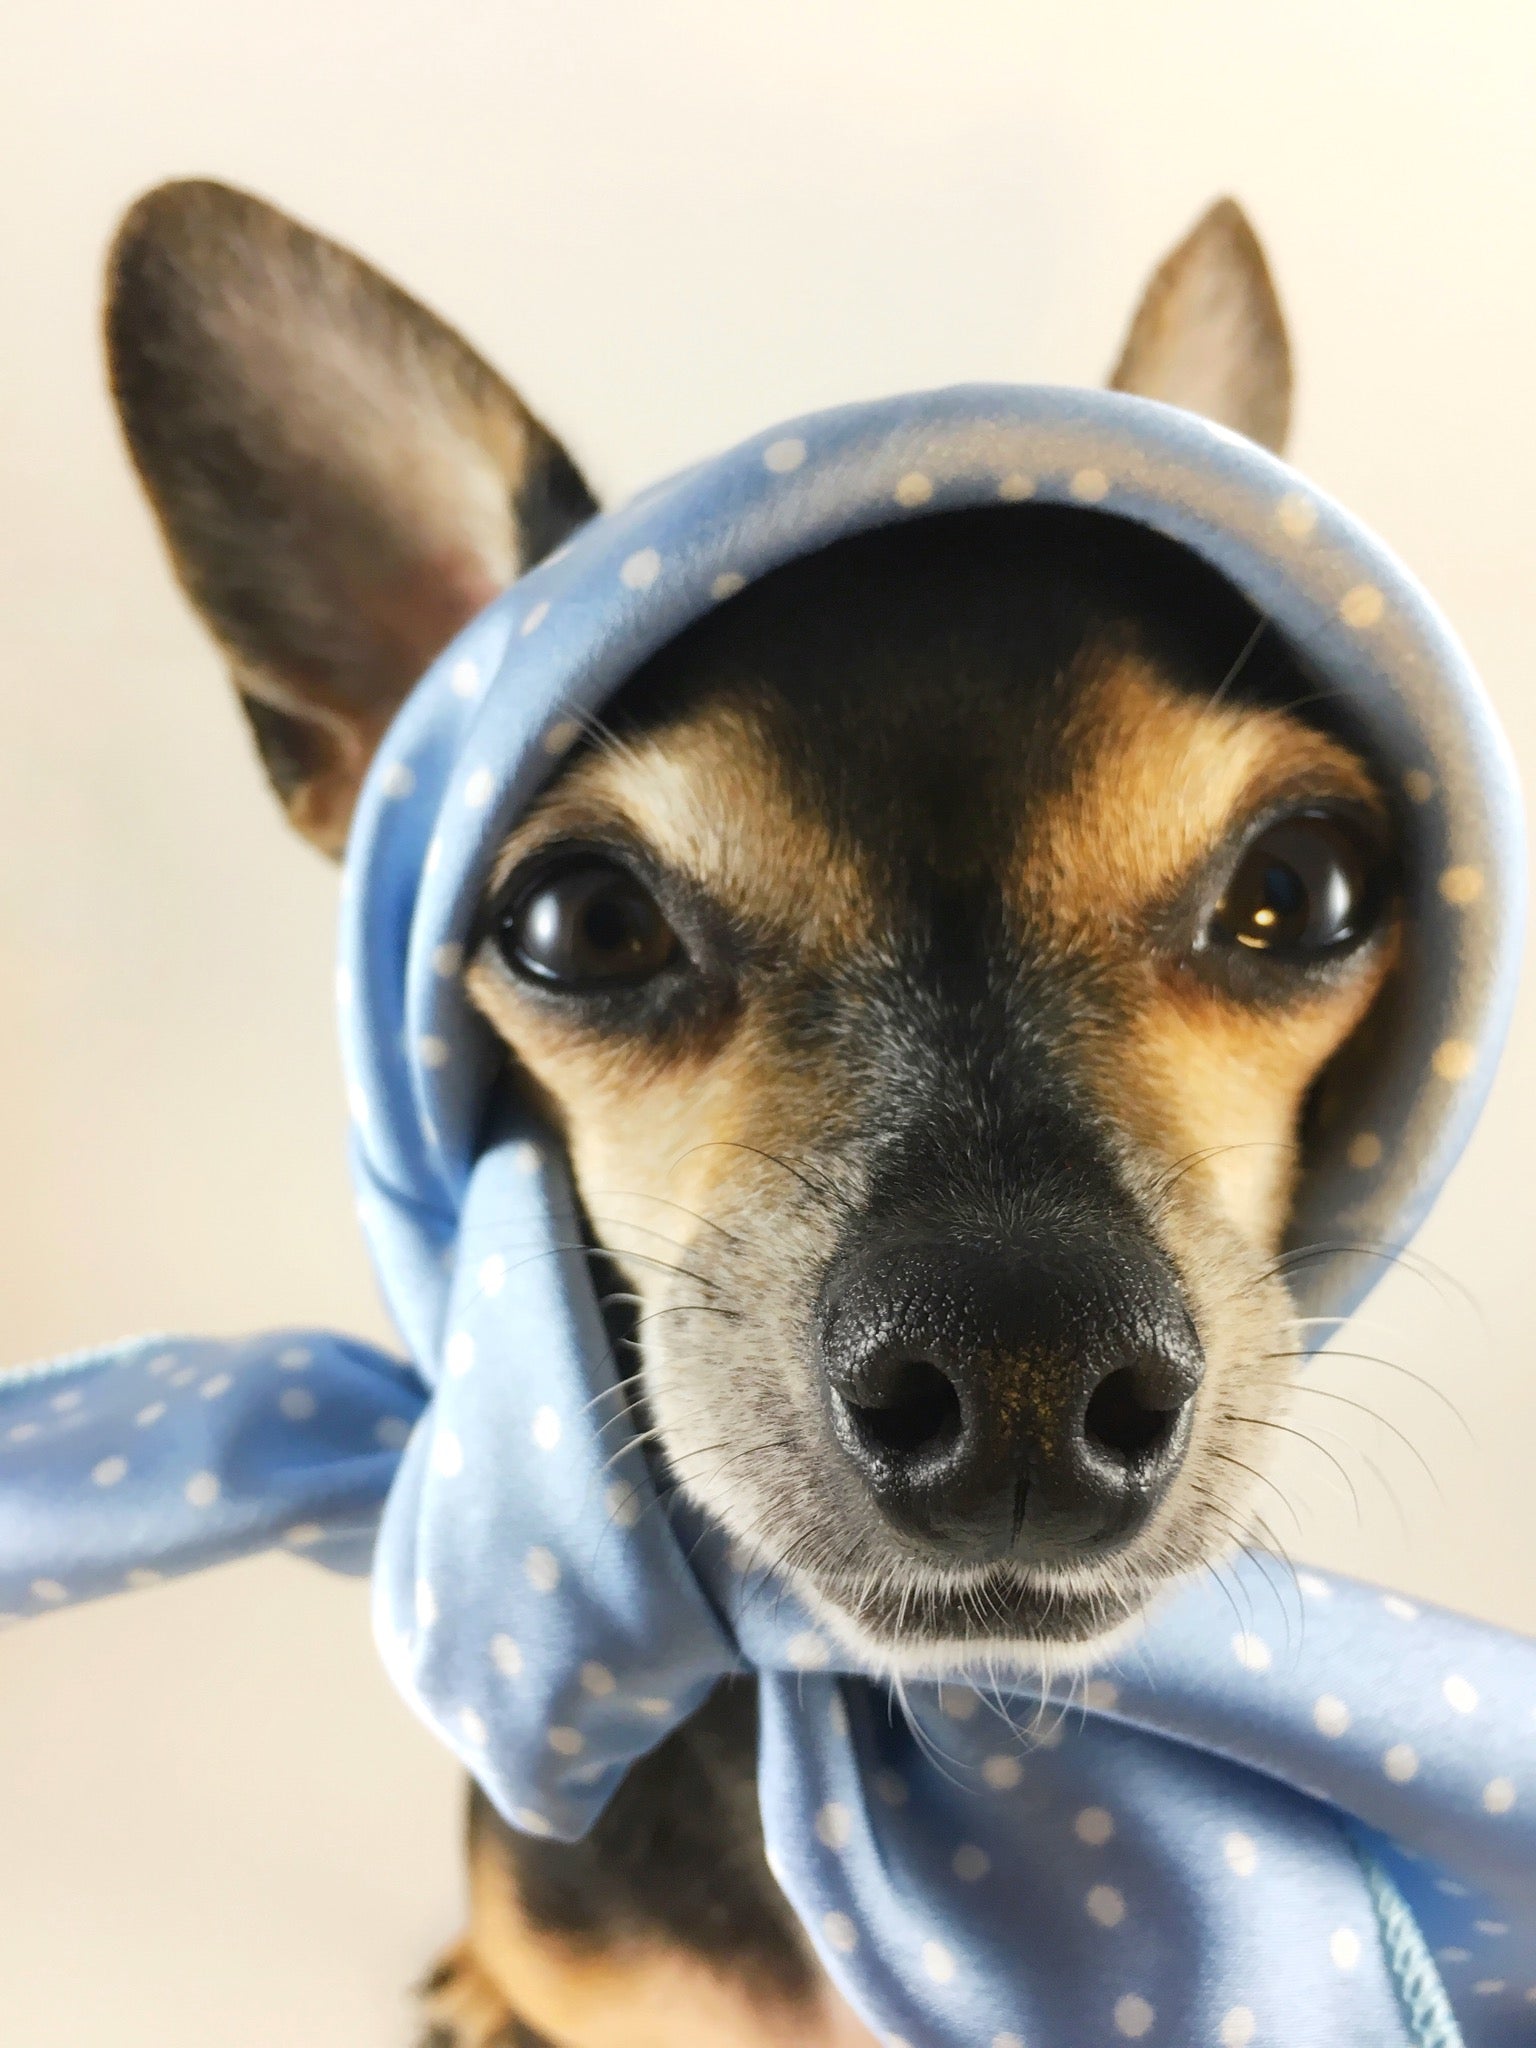 Polka Itty Bitty Powder Blue Swagdana Scarf - Bust of Cute Chihuahua Wearing Swagdana Scarf as Headscarf. Dog Bandana. Dog Scarf.